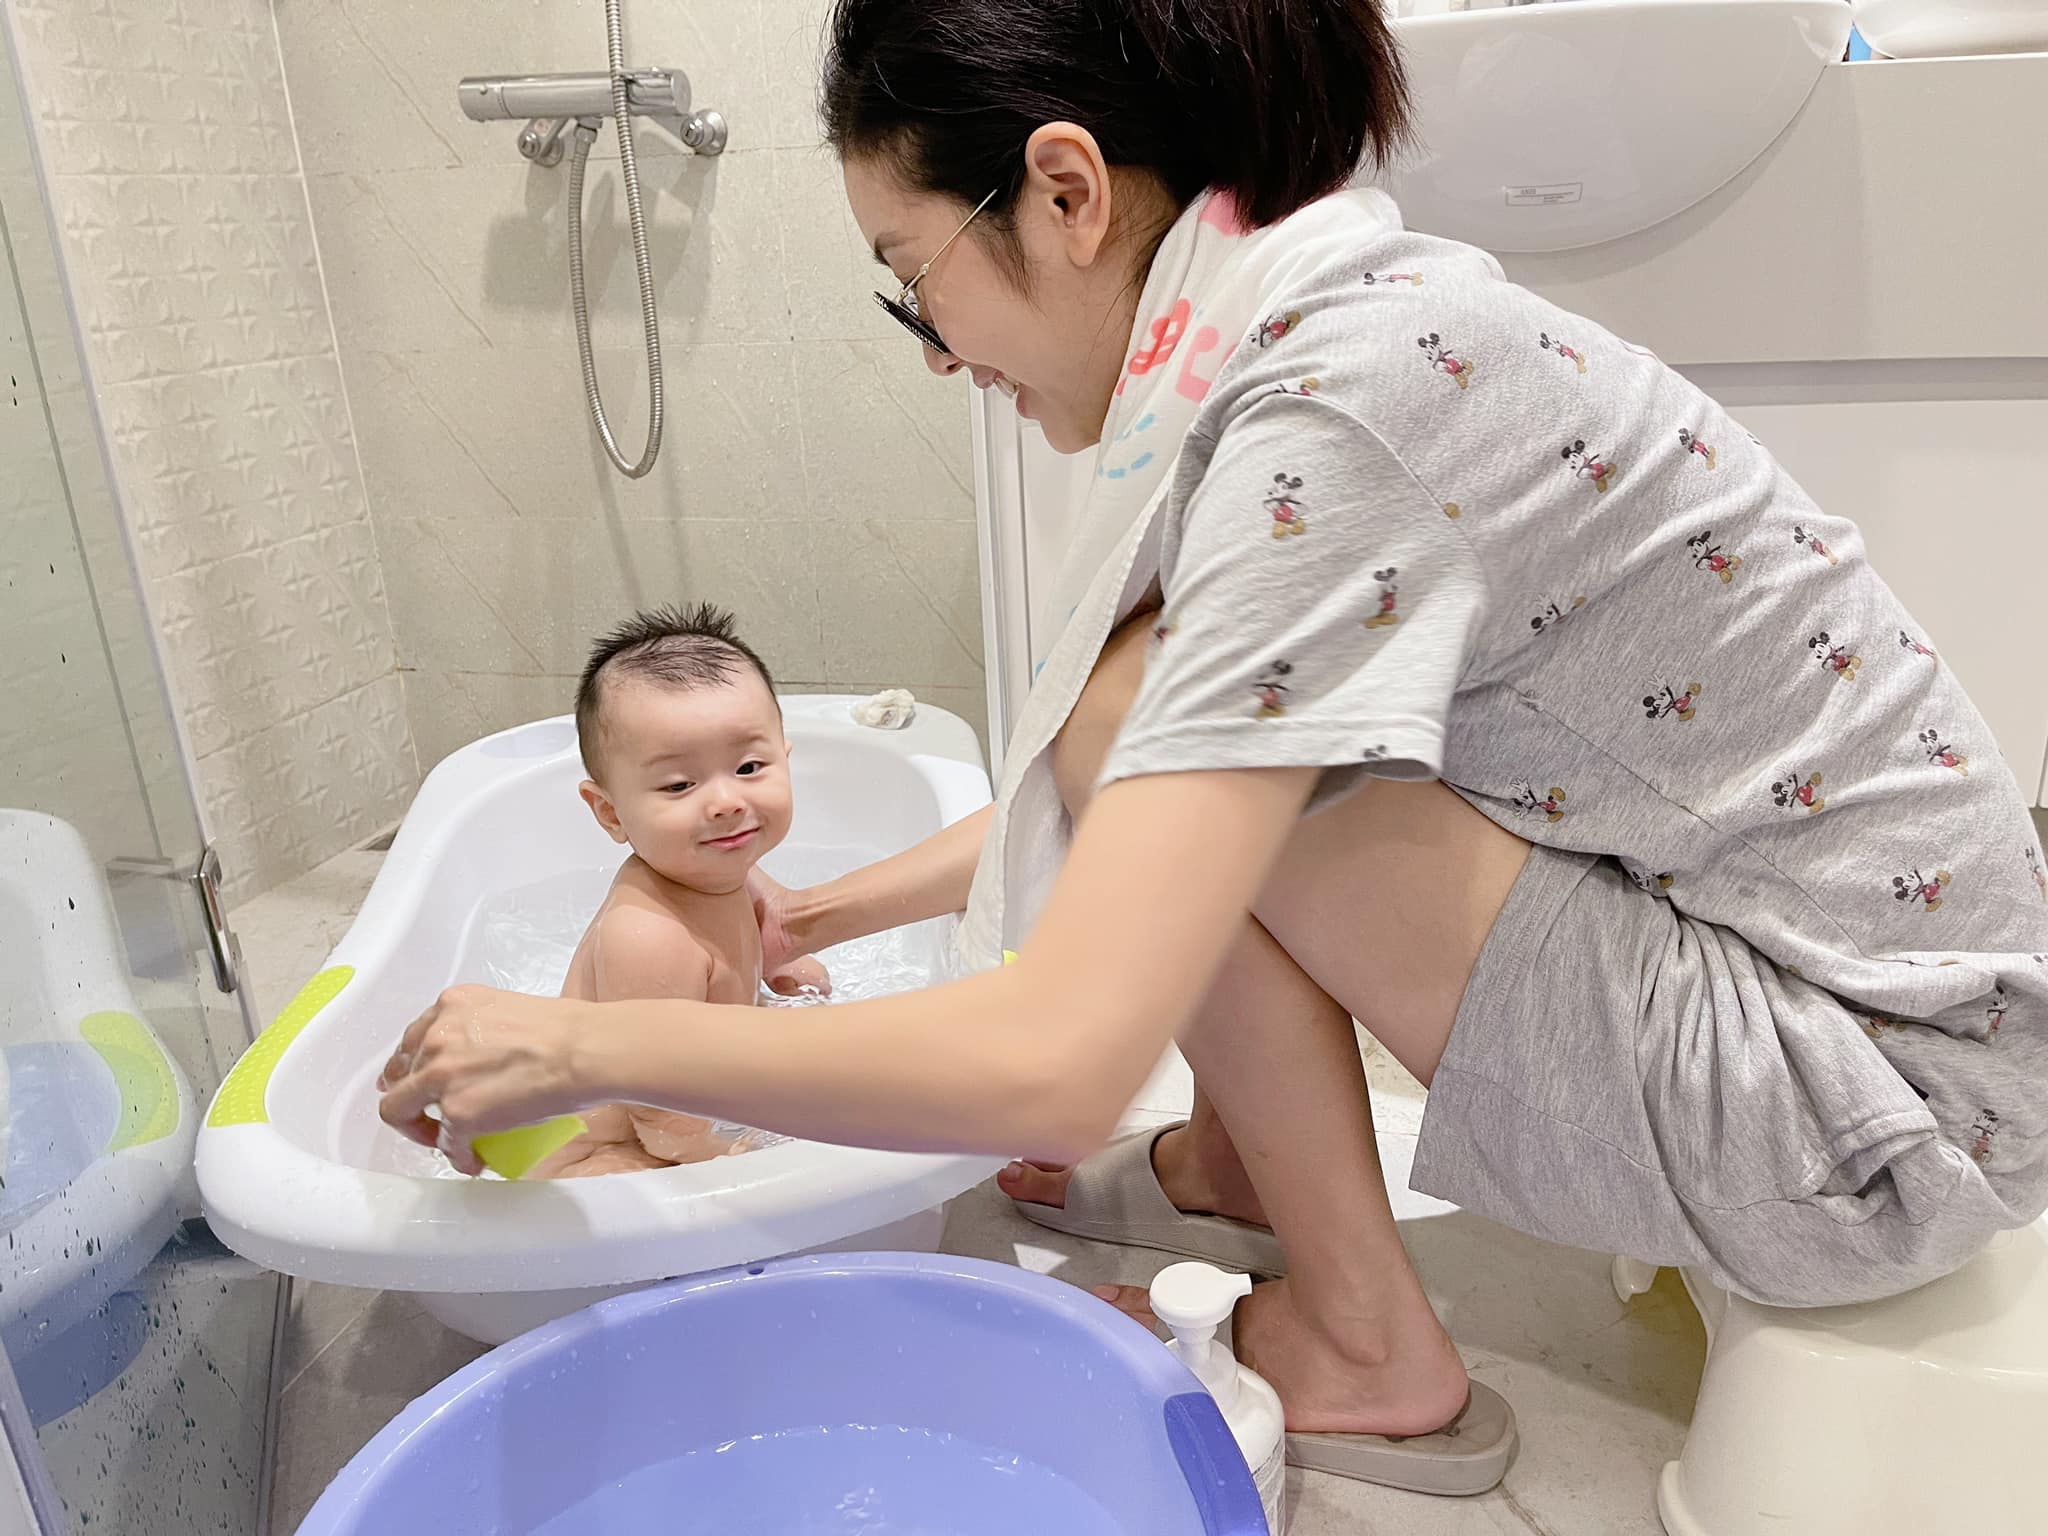 Biểu cảm cực hài của con trai Á hậu Thúy Vân khi được mẹ tắm, lại trở thành 'meme' hot sau bộ nail rồi! - ảnh 1